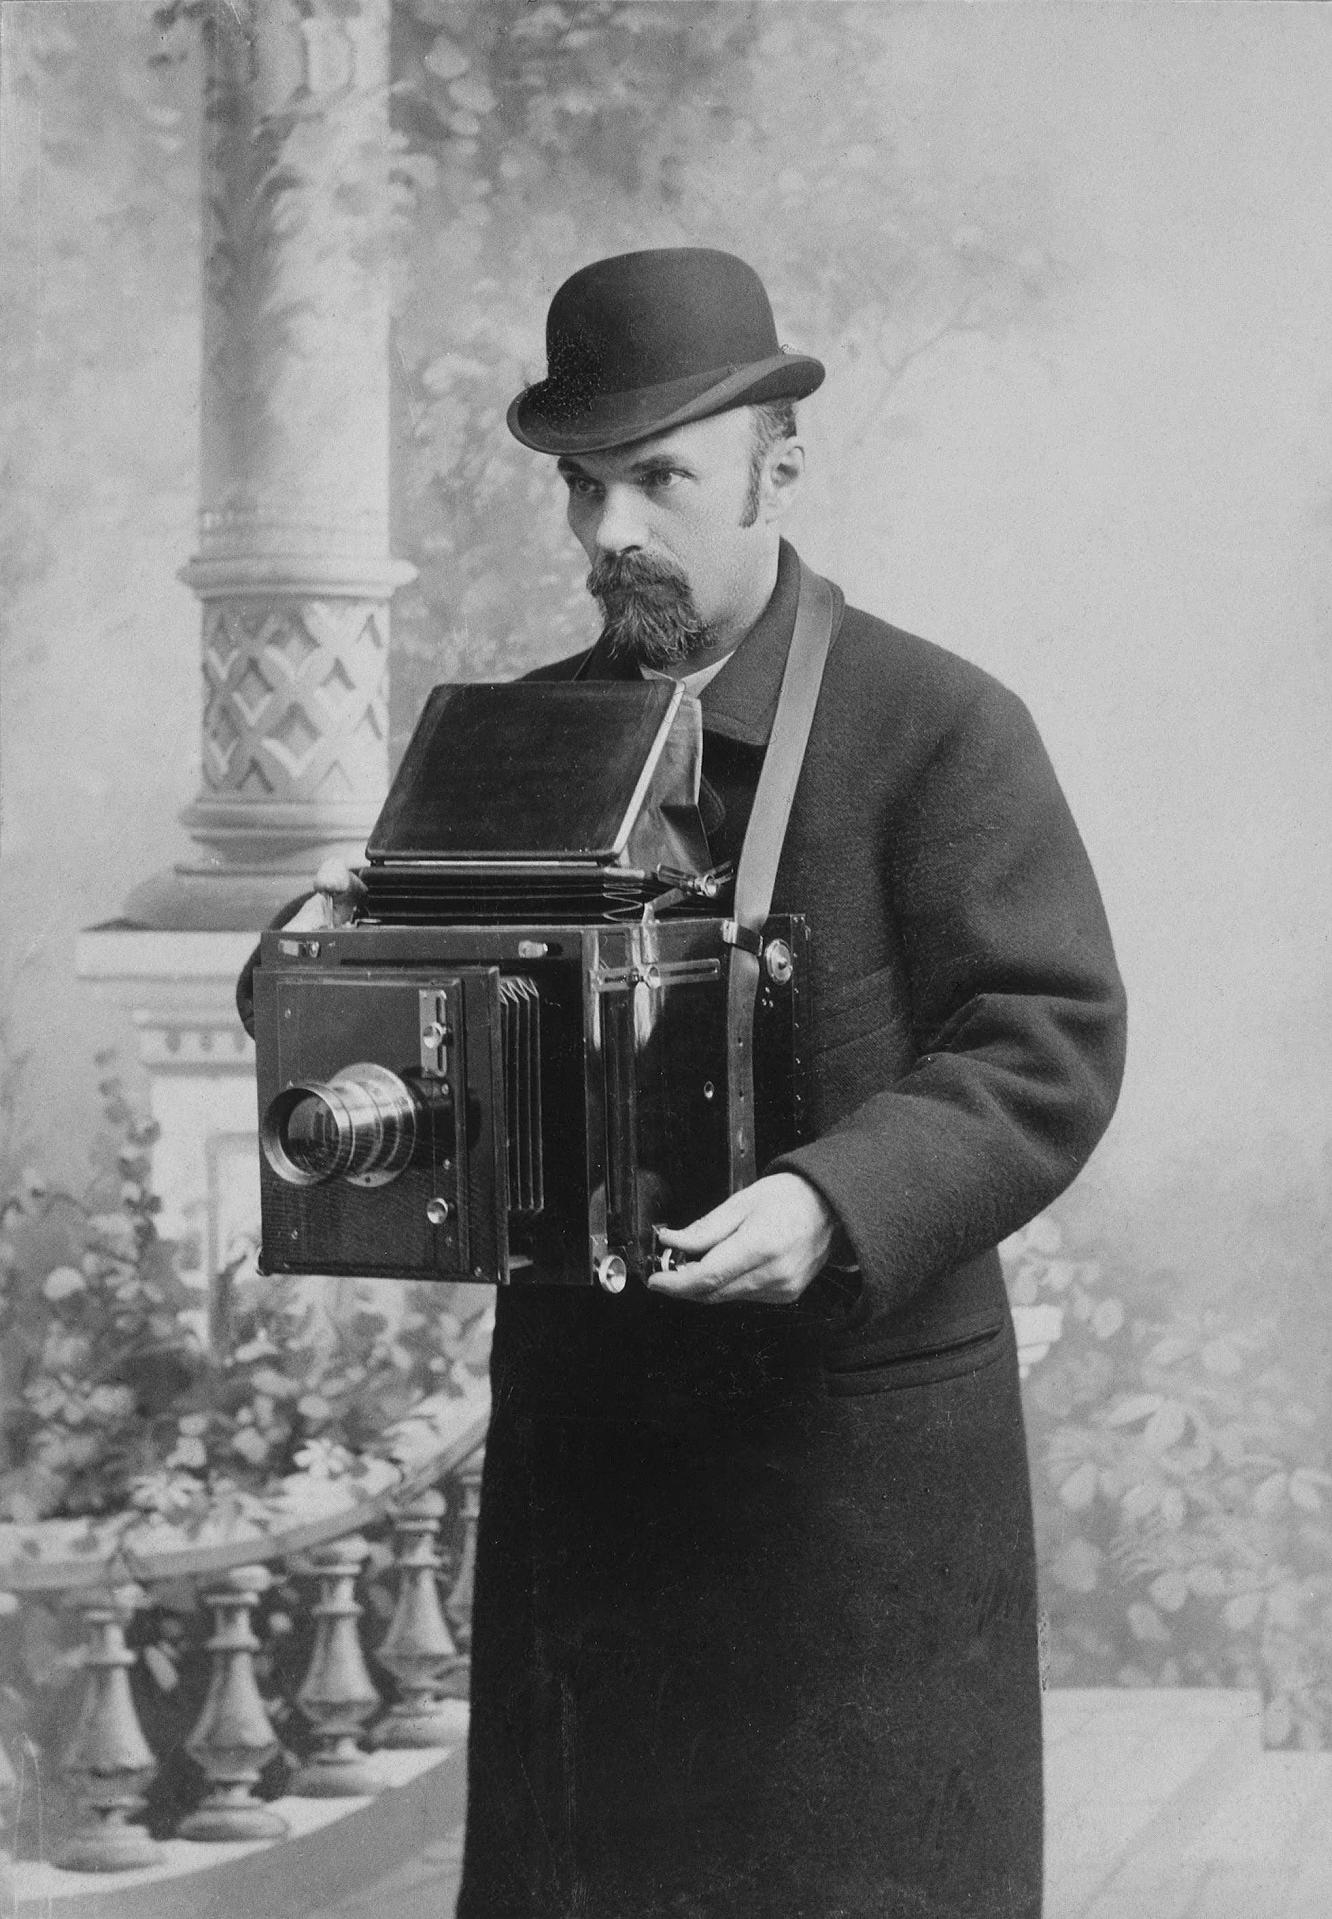 Може се рећи да је Карл Була највећи петербуршки фотограф свих времена. Почетком 20. века фотографисао је стара здања и познате становнике Санкт Петербурга, а неке од његових фотографија коришћене су приликом рестаурације старих зграда. // Карл Була, аутопортрет, 1917.